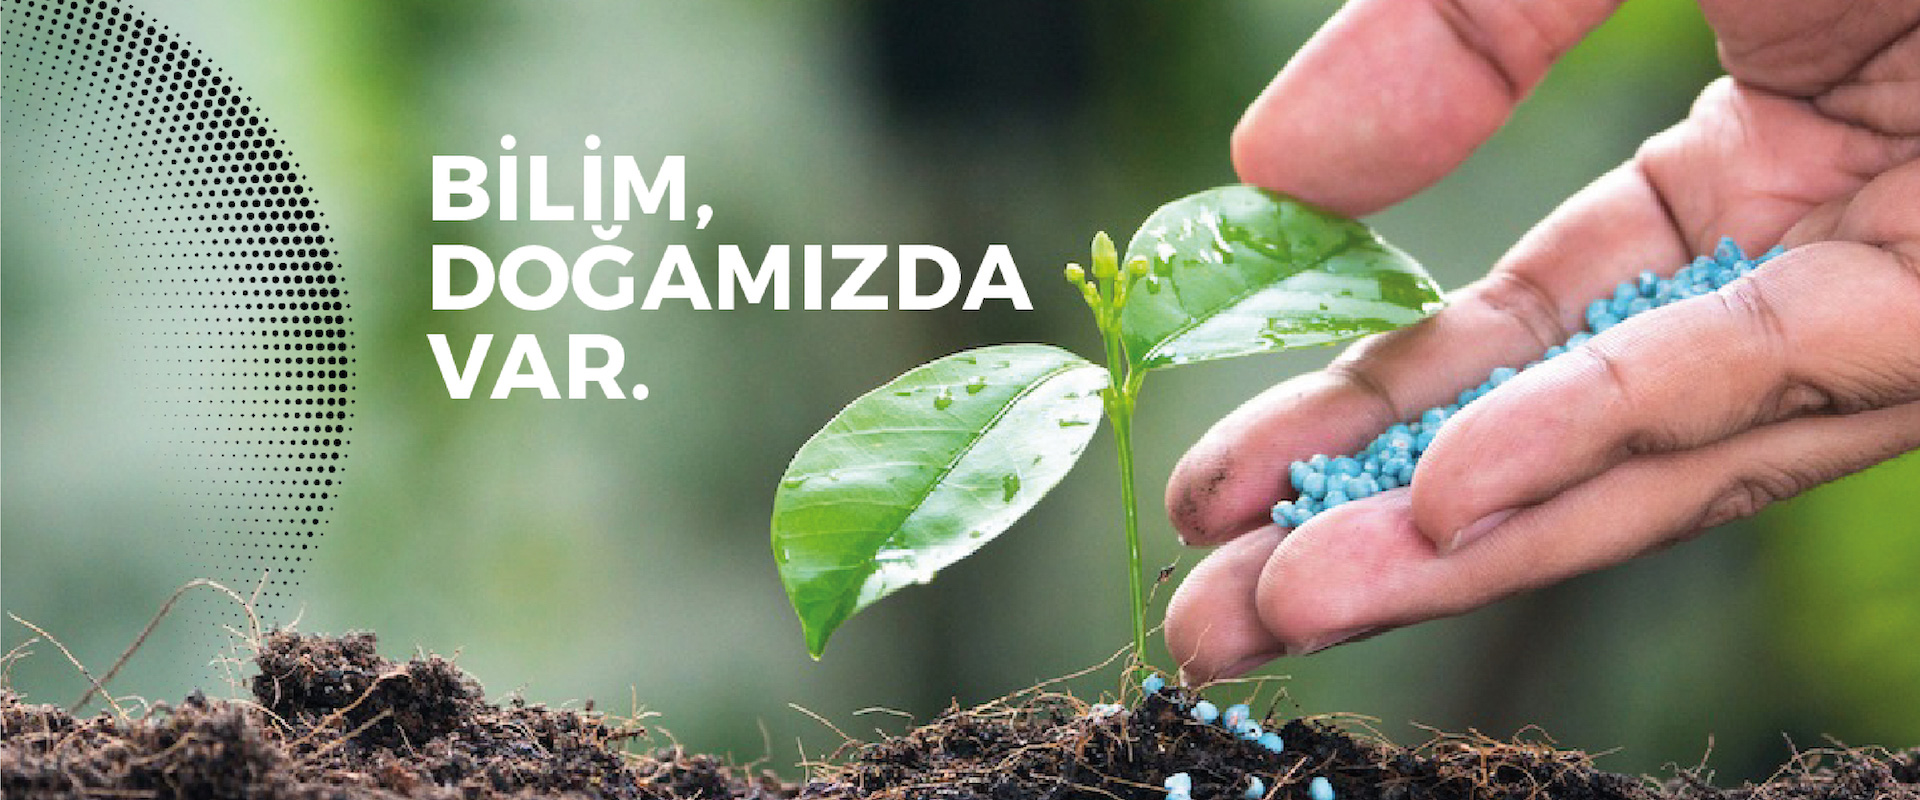 Ceon Tarım Kimyasalları - KONSEPTİZ Reklam Ajansı İzmir